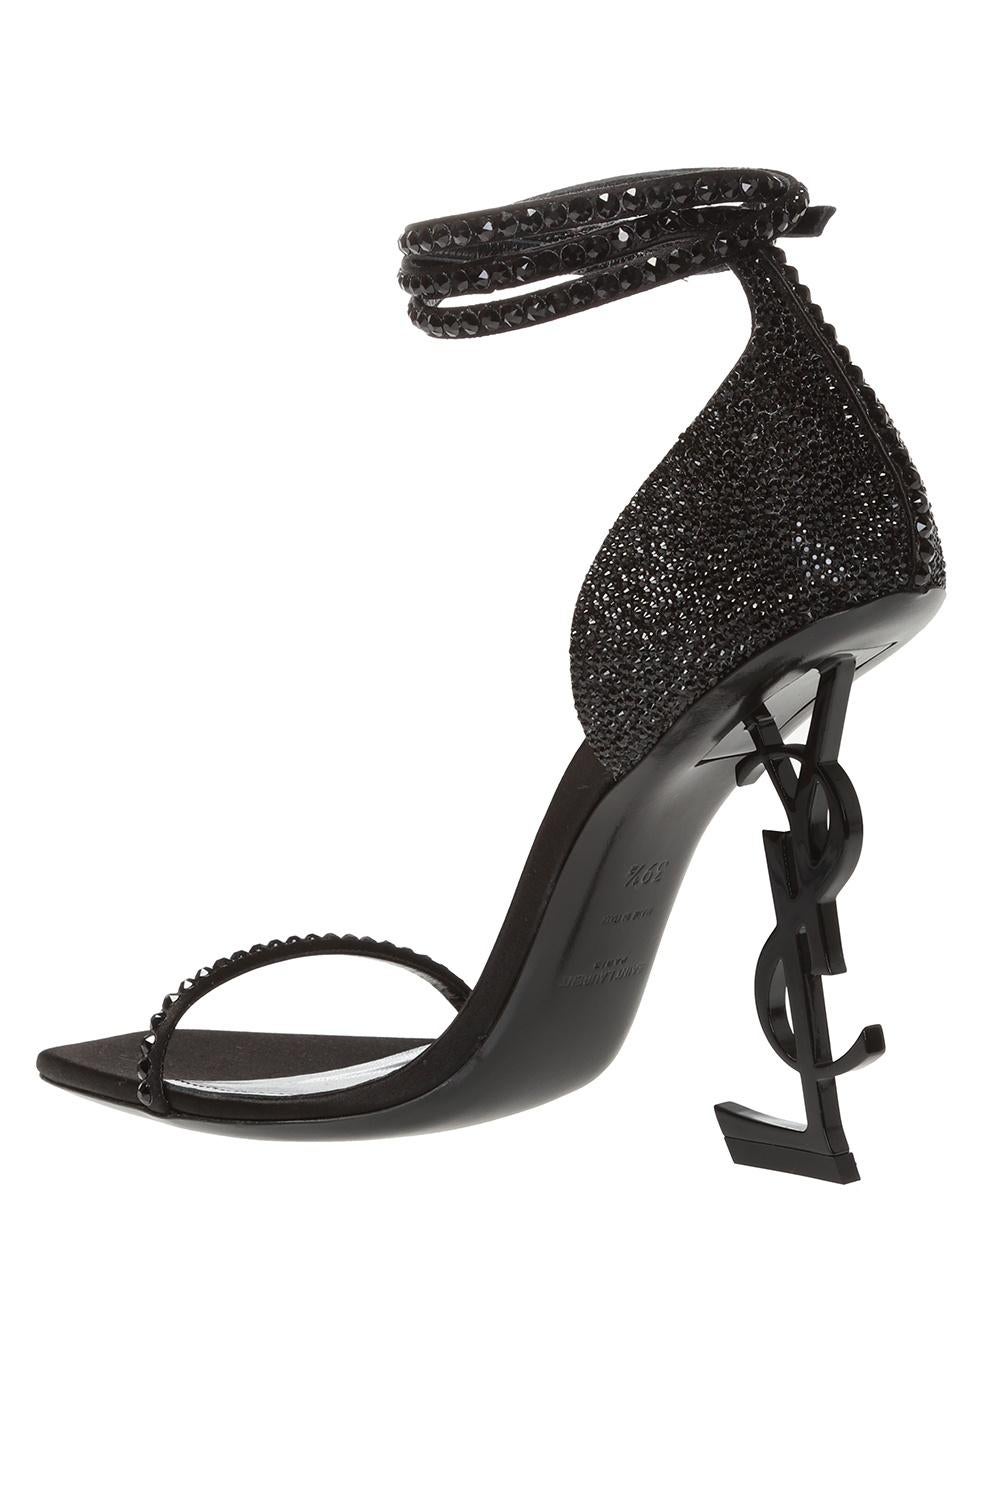 black heels embellished